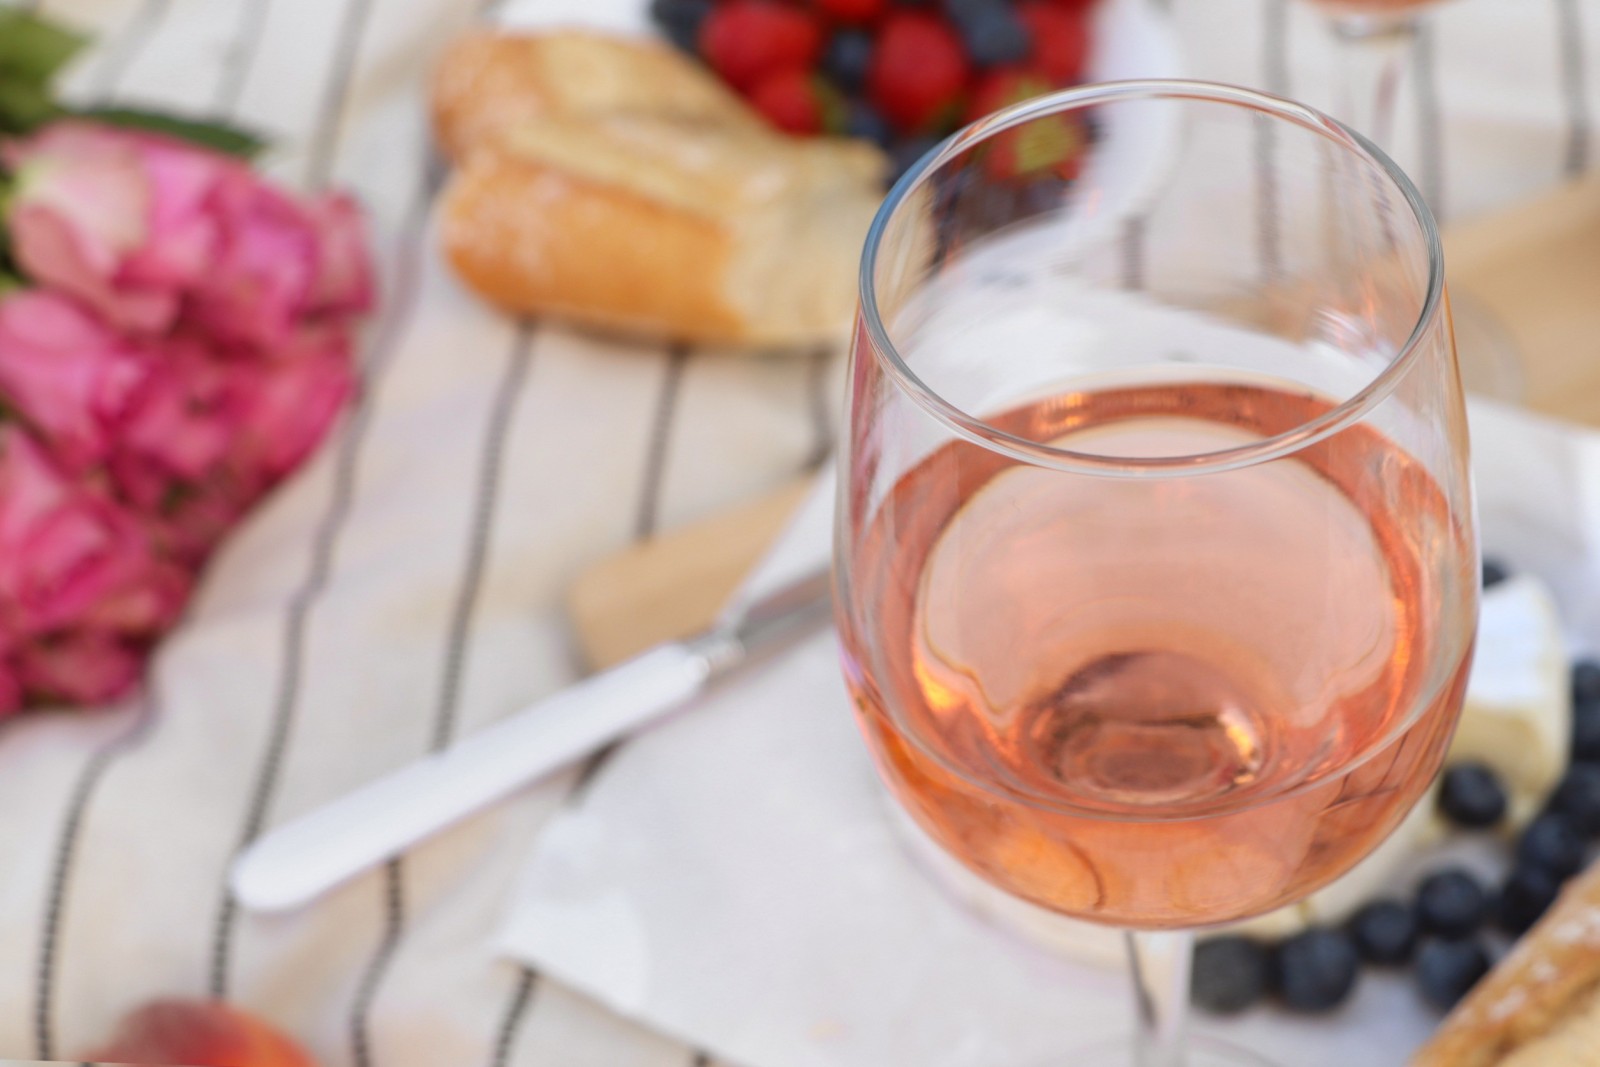 La Germania produce sempre più rosé - Tendenza: i vini tedeschi diventano più secchi